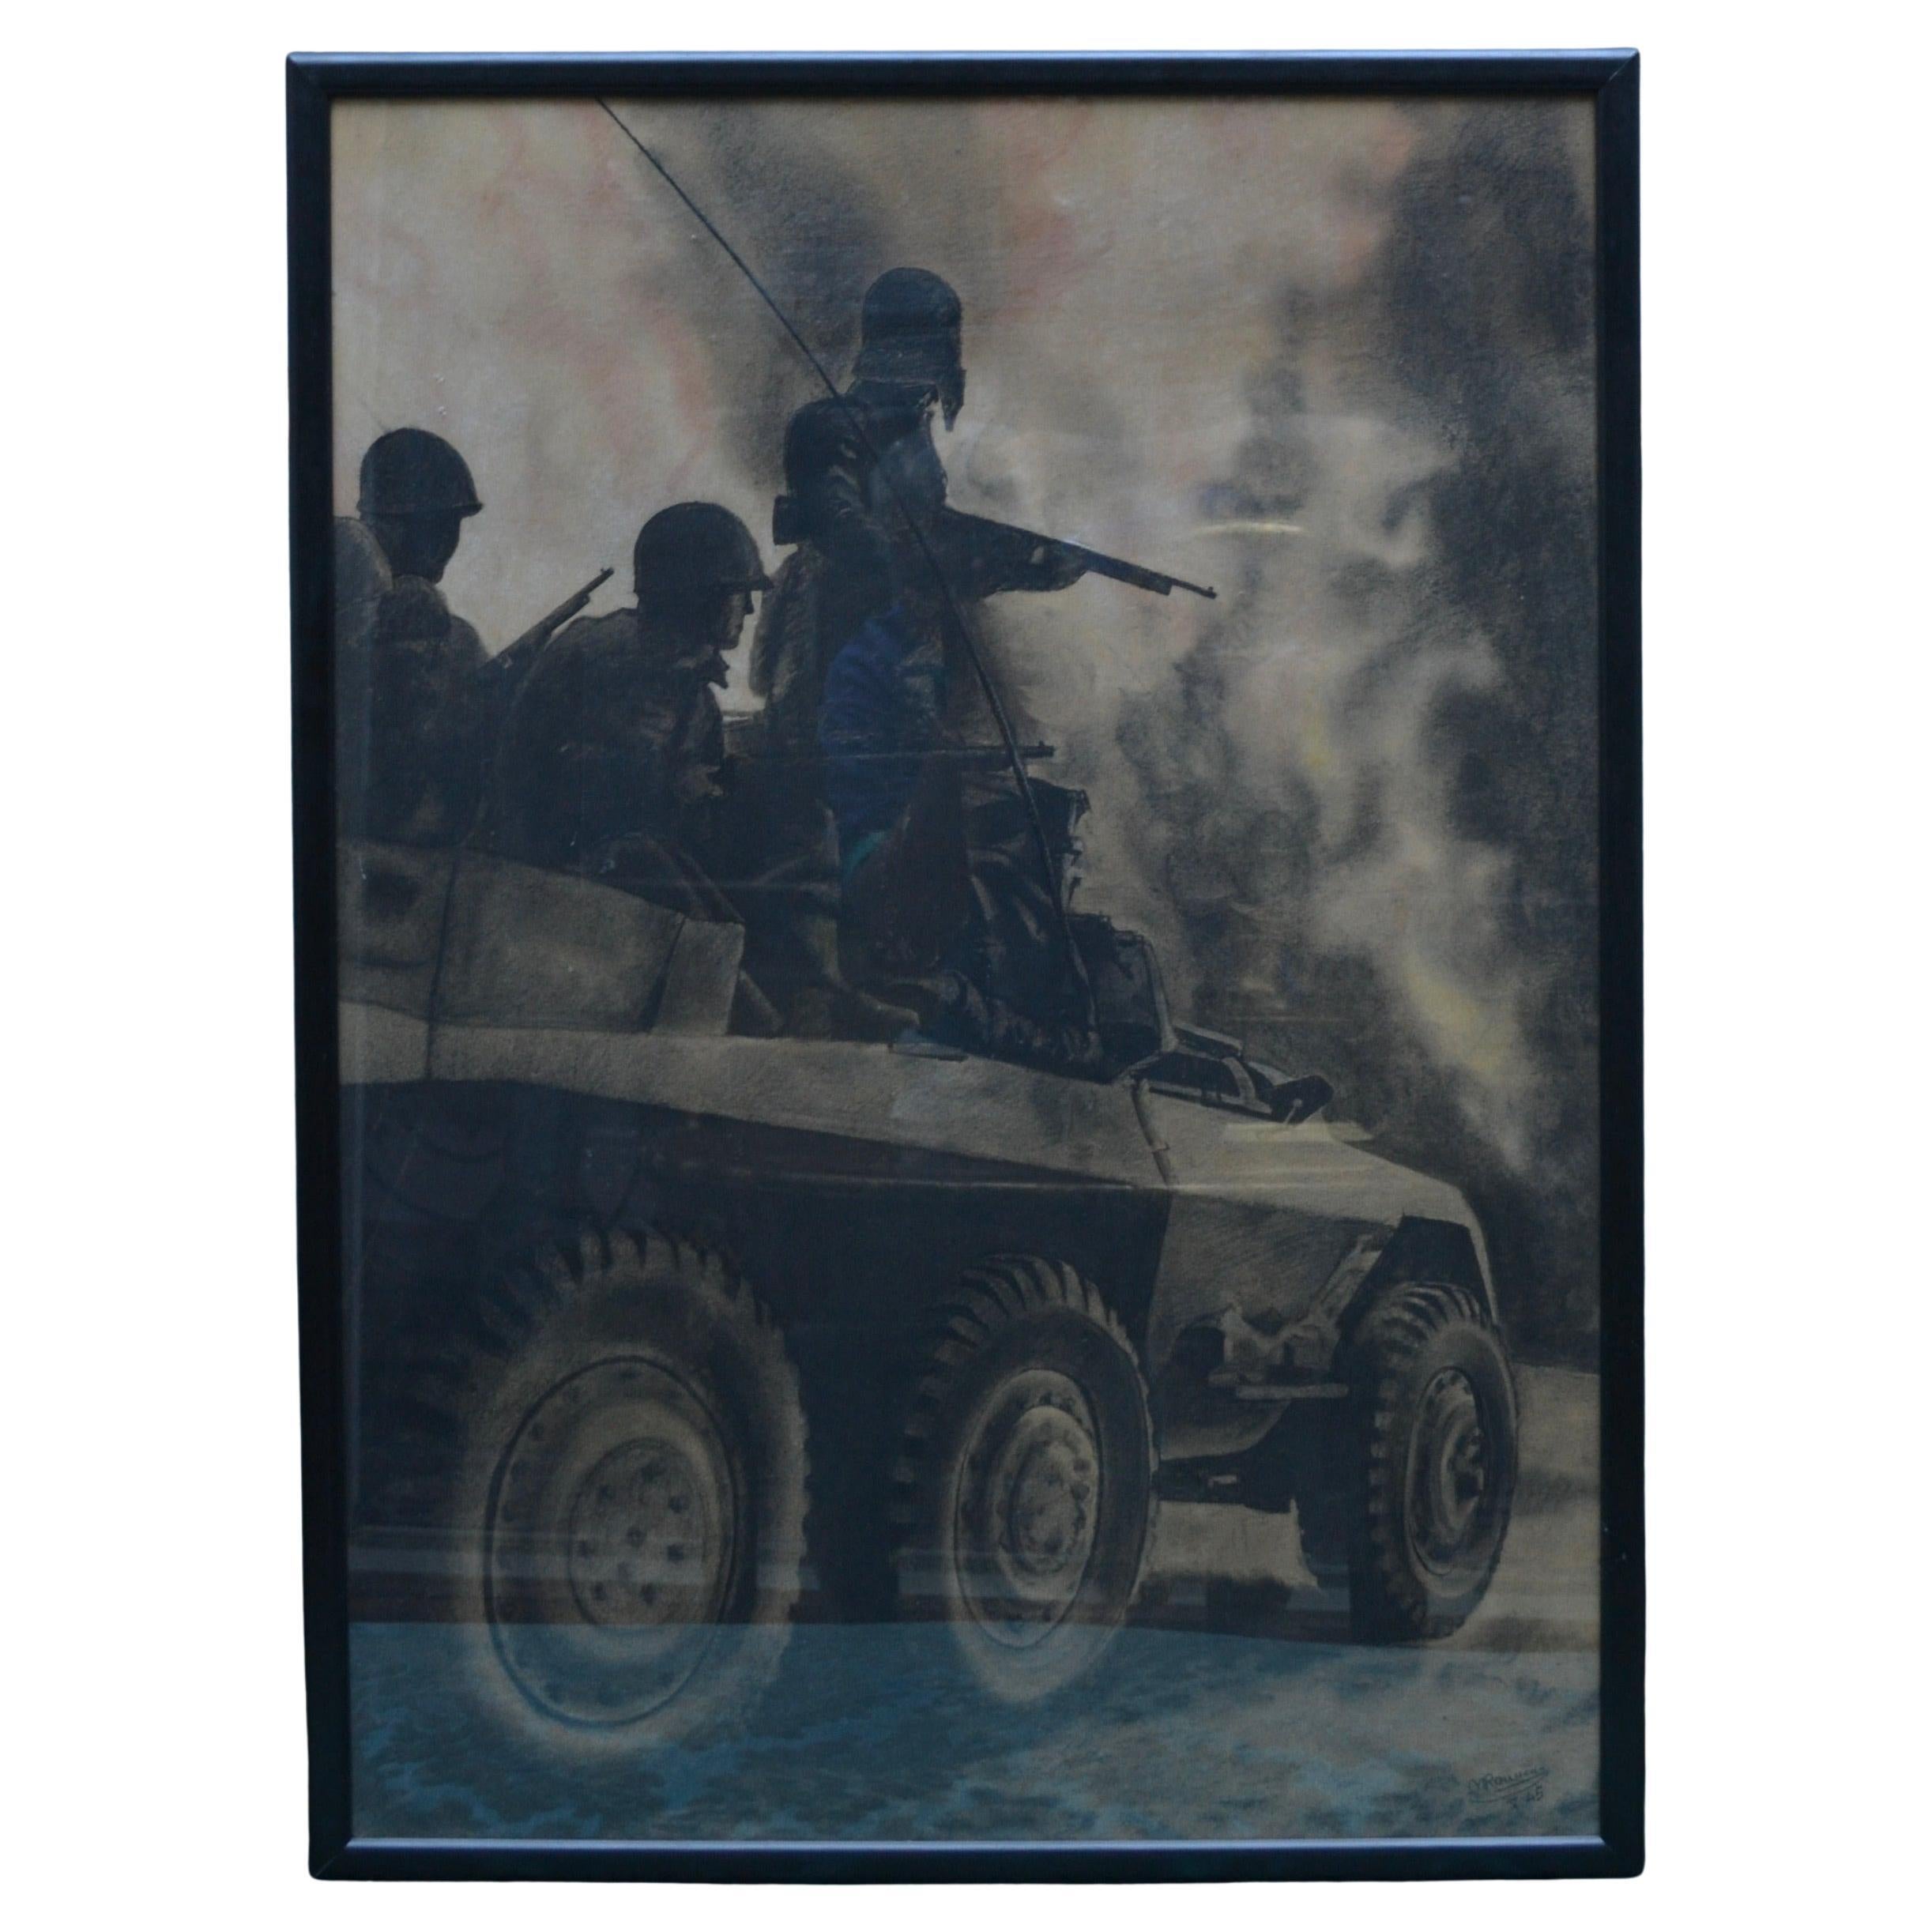 Ein interessantes Stück Militaria aus dem Zweiten Weltkrieg, bestehend aus einer Kreideskizze oder Zeichnung von  drei Angehörige des US-Militärs im Kampf mit Gewehren in der Hand auf einer scheinbar 1943 gebauten Maschine  Ford M20 Gepanzertes